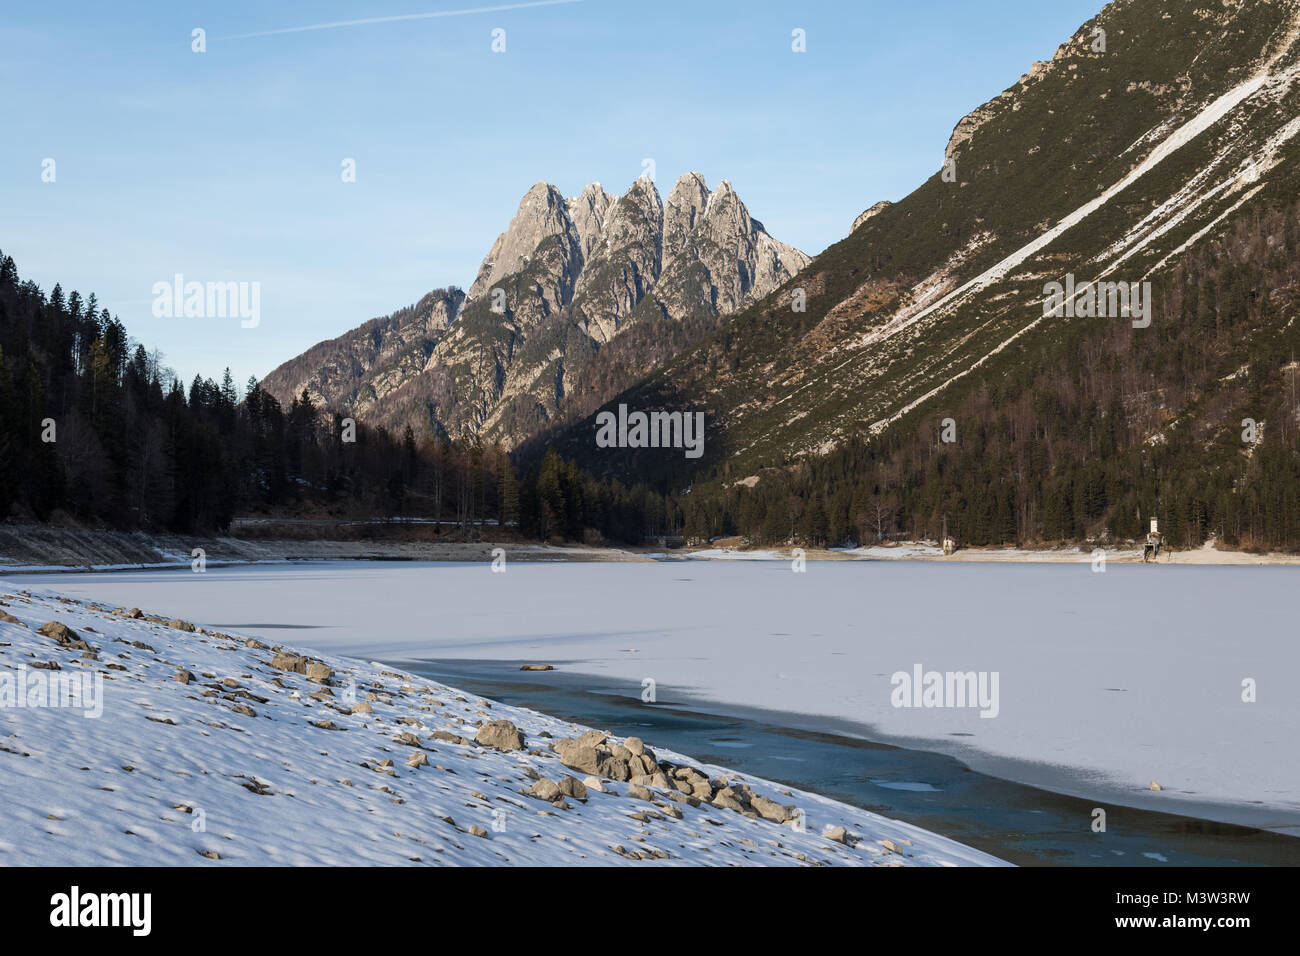 Lago del Predil (Predil Lake) in winter with the Cinque Punte mountain in the background, Friuli Venezia Giulia, Italy Stock Photo